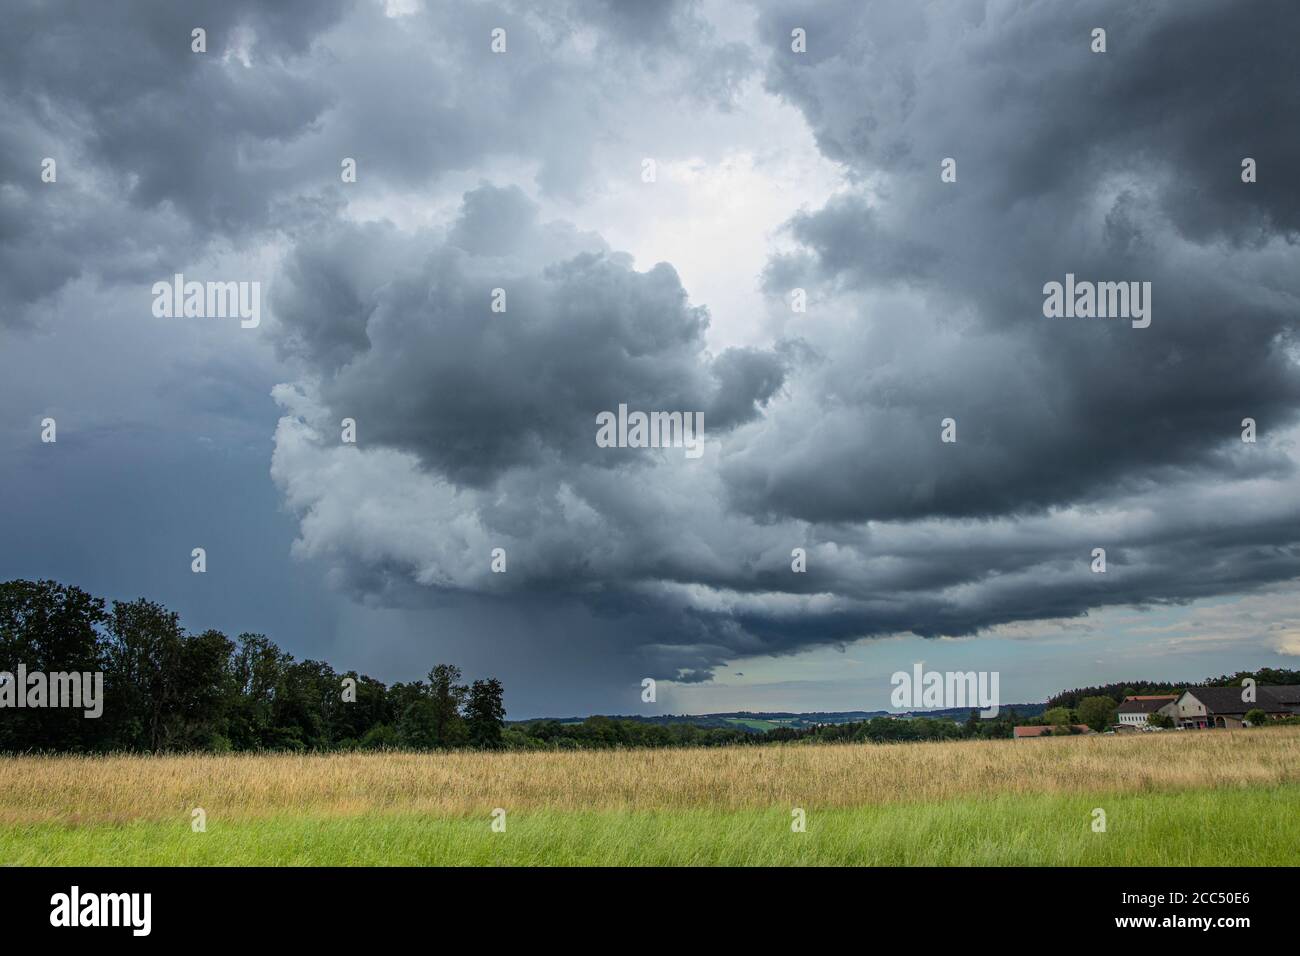 thunderstorm with heavy rain, Germany, Bavaria, Isental Stock Photo